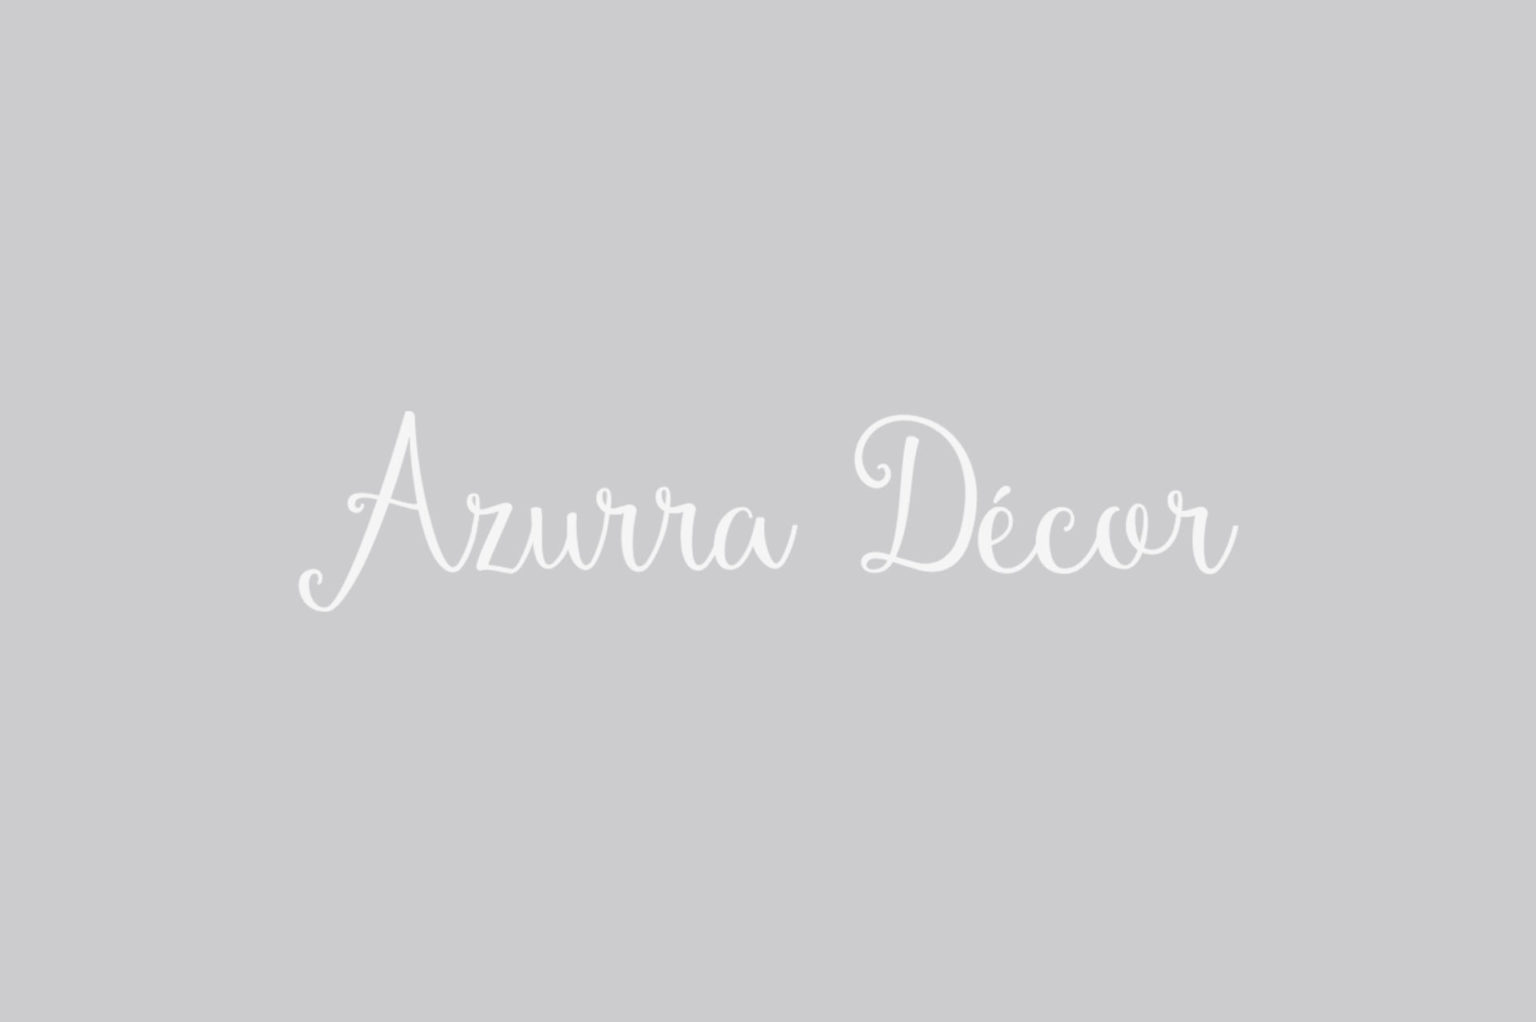 Azurra Décor - Glow Creative